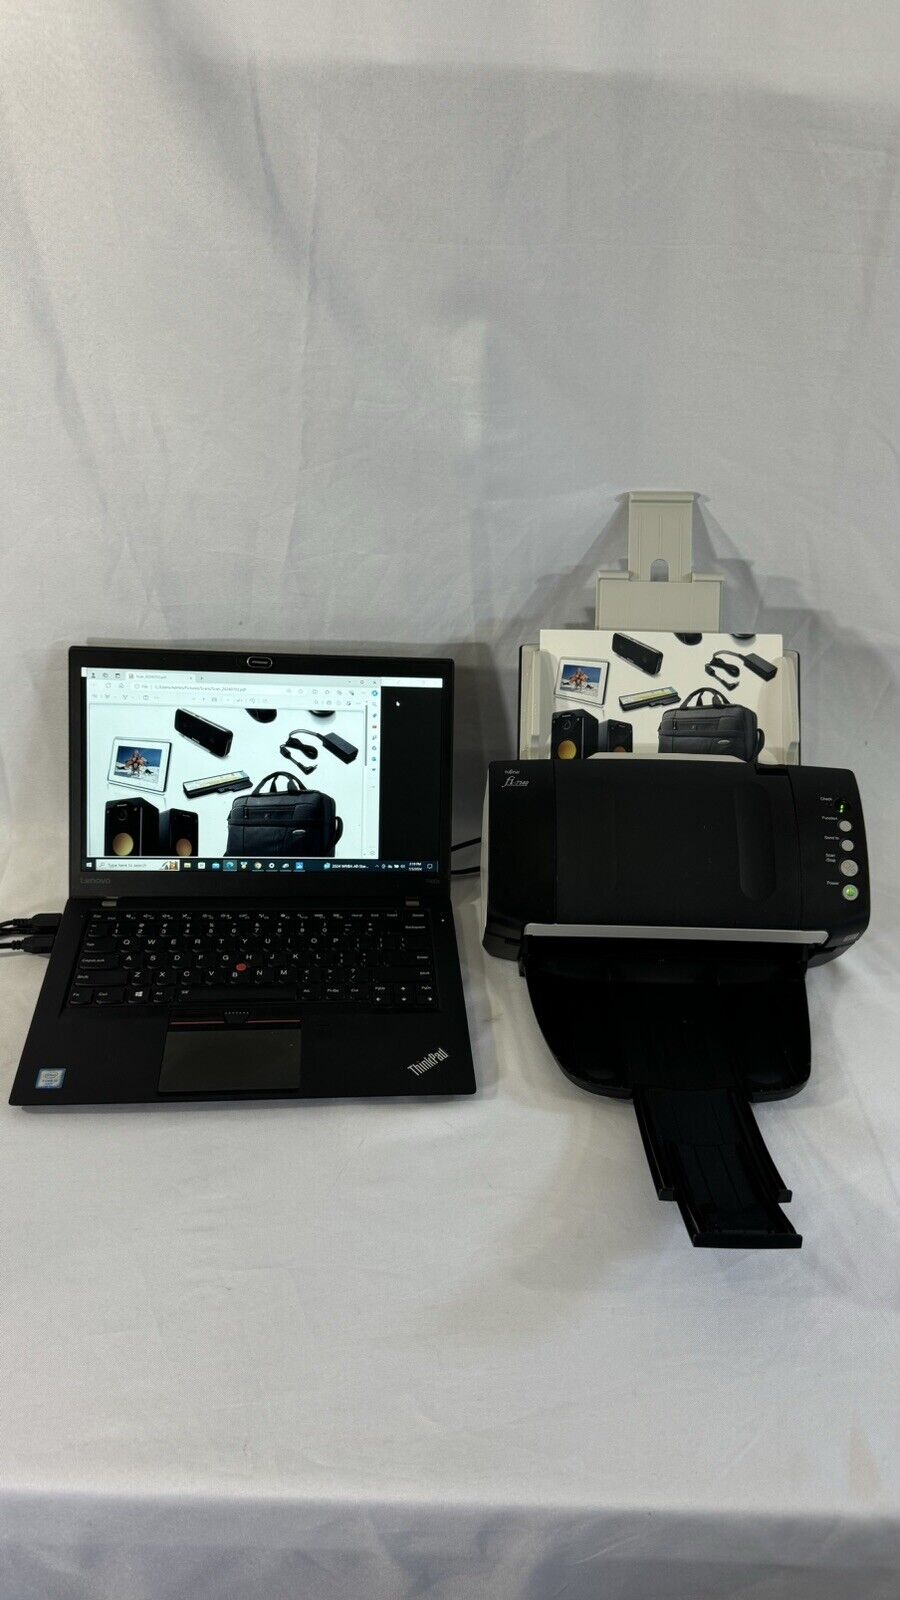 Fujitsu fi-7140 ADF Duplex Color Document Scanner USB 2.0 w/AC Adapter WORKS